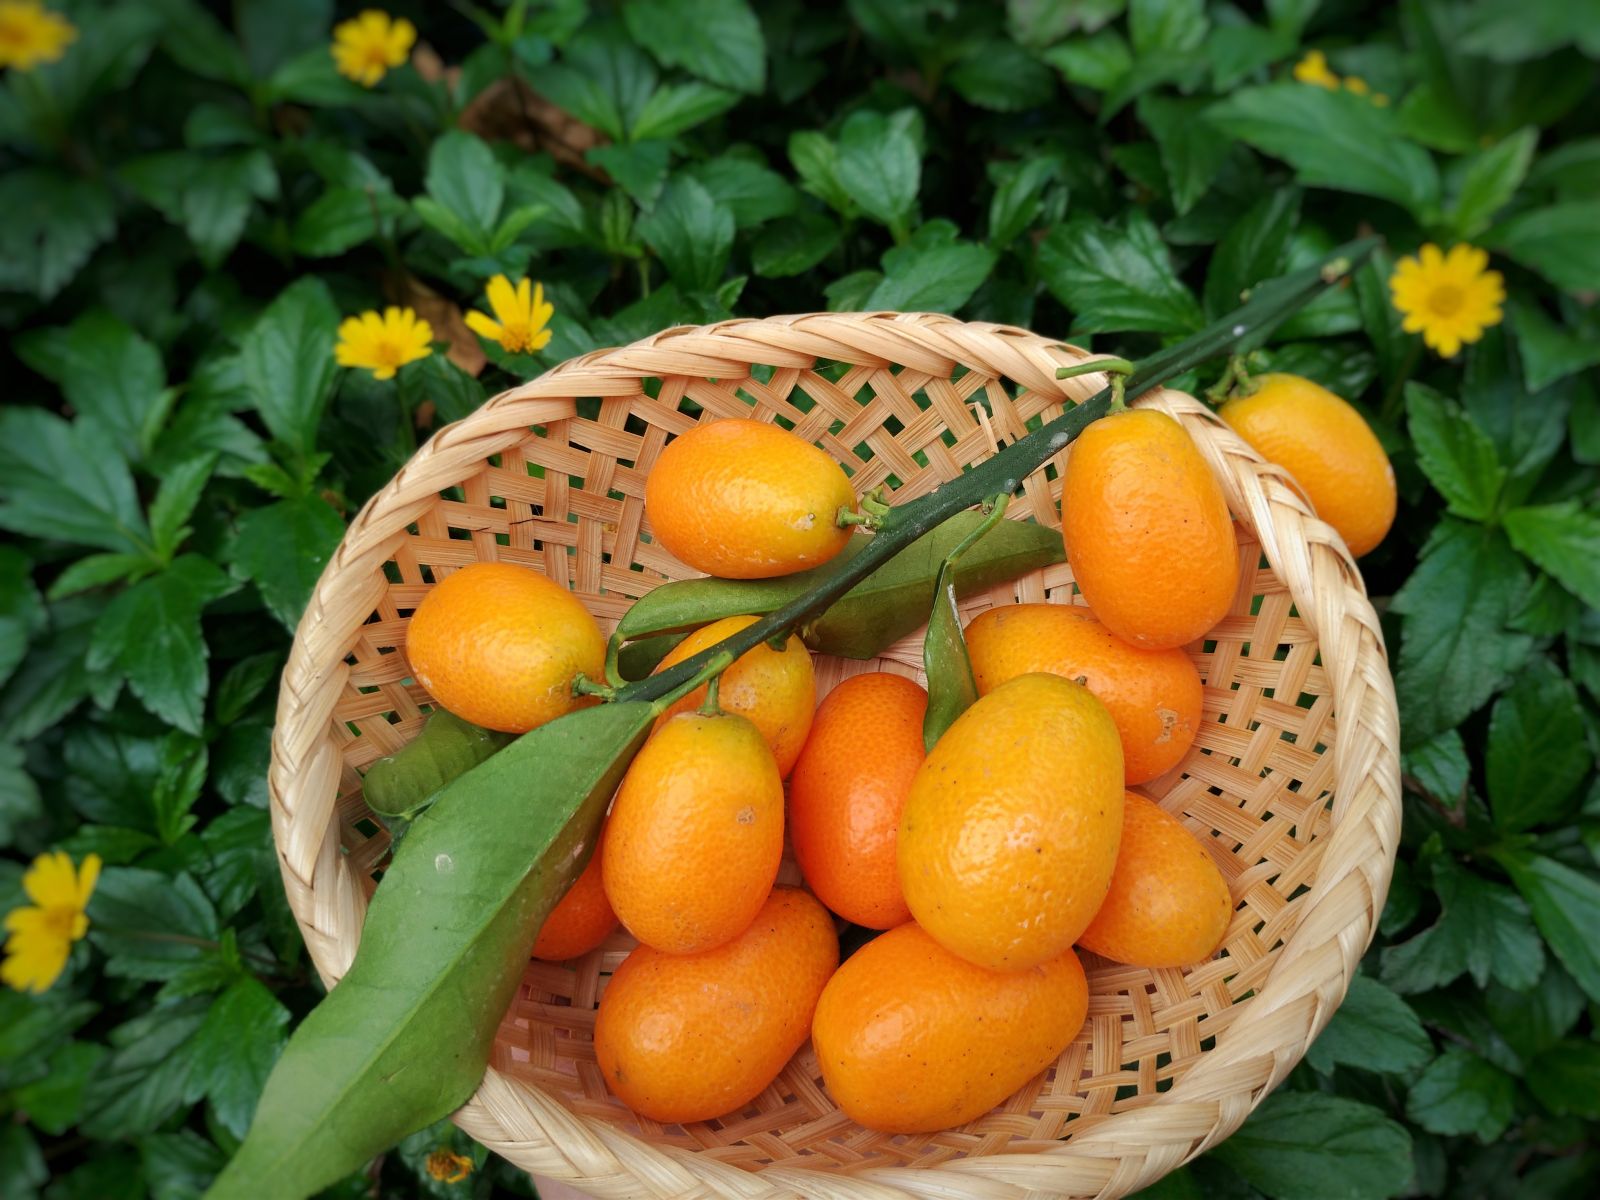 圖一 「金柑」的外皮清香甘甜且含維他命C，是少數可以連皮食用的柑橘類水果之一